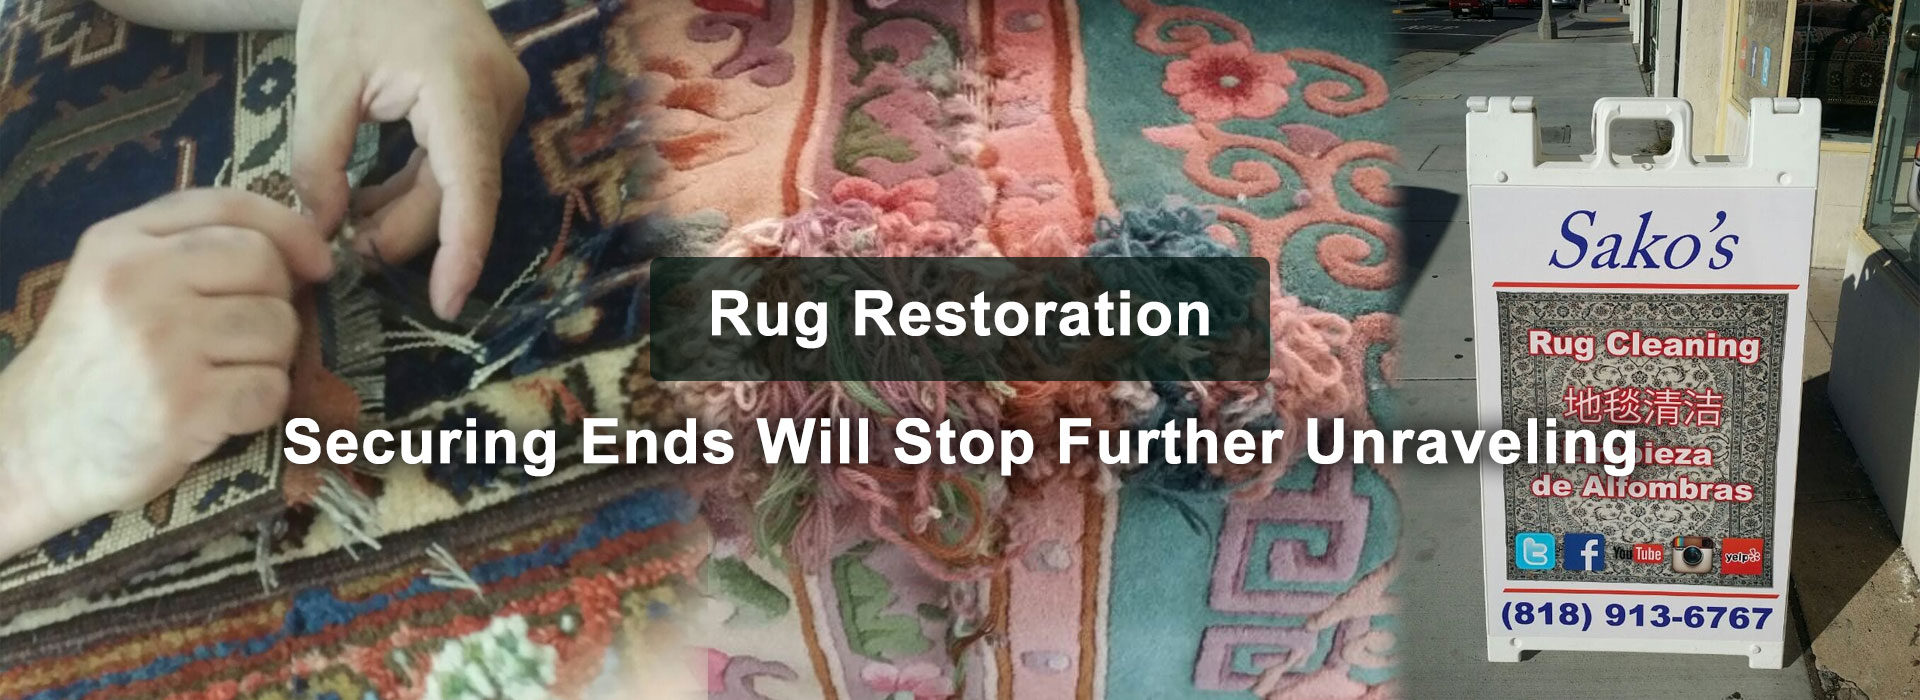 Sako's Rug Restoration & Cleaning